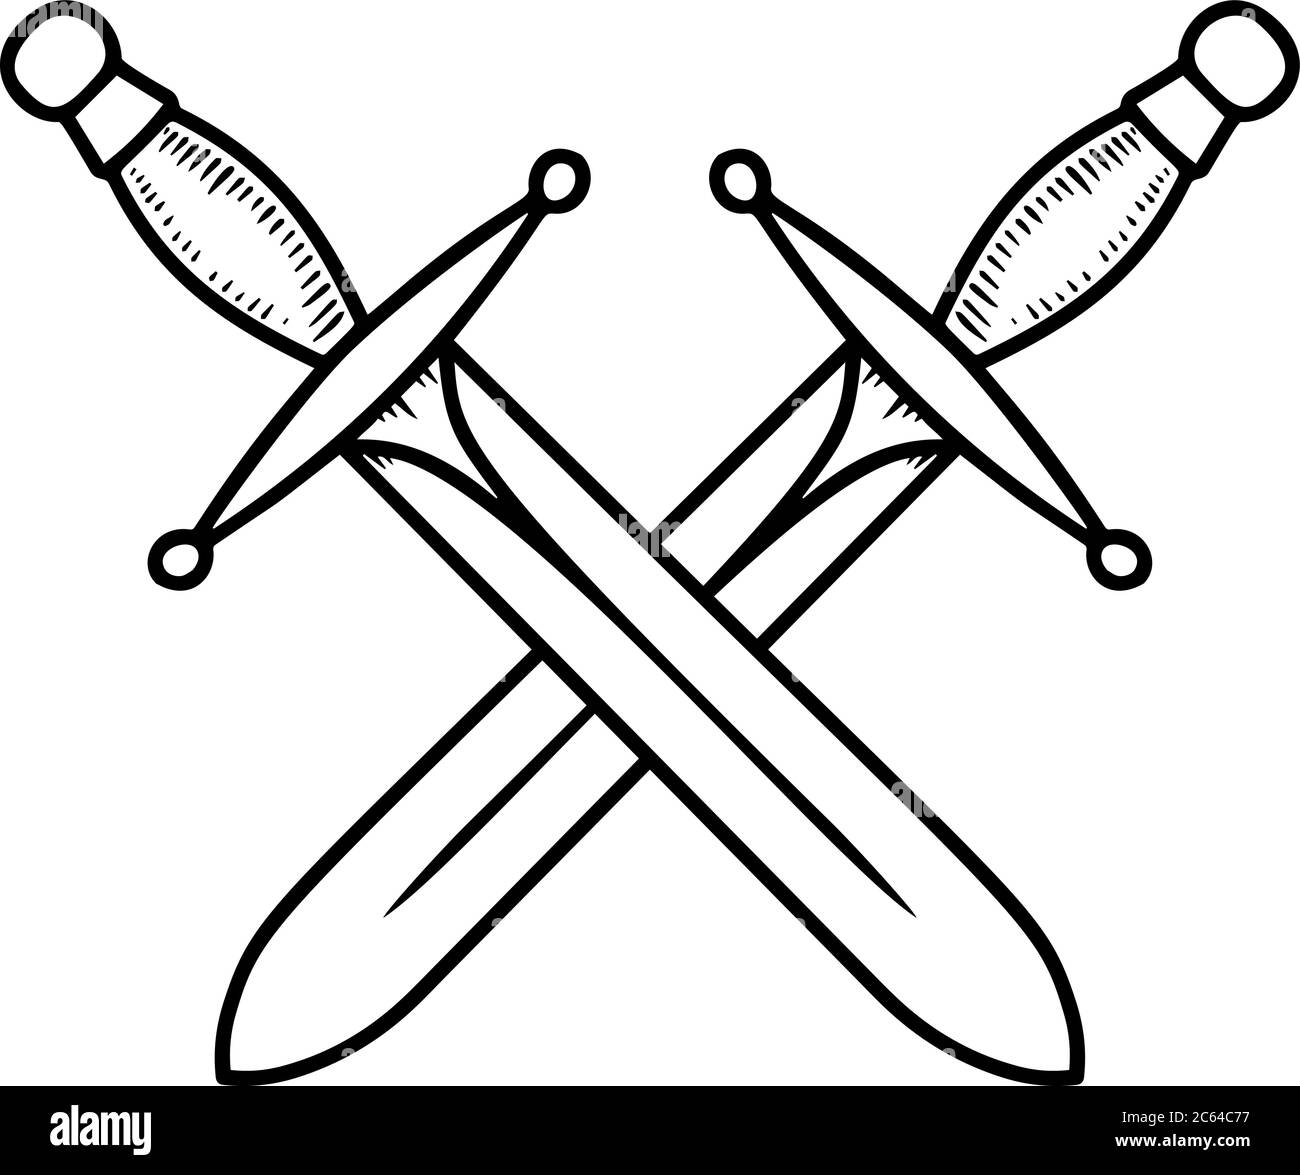 Vintage illustration of crossed swords in engraving style. Design element for logo, label, emblem, sign. Vector illustration Stock Vector